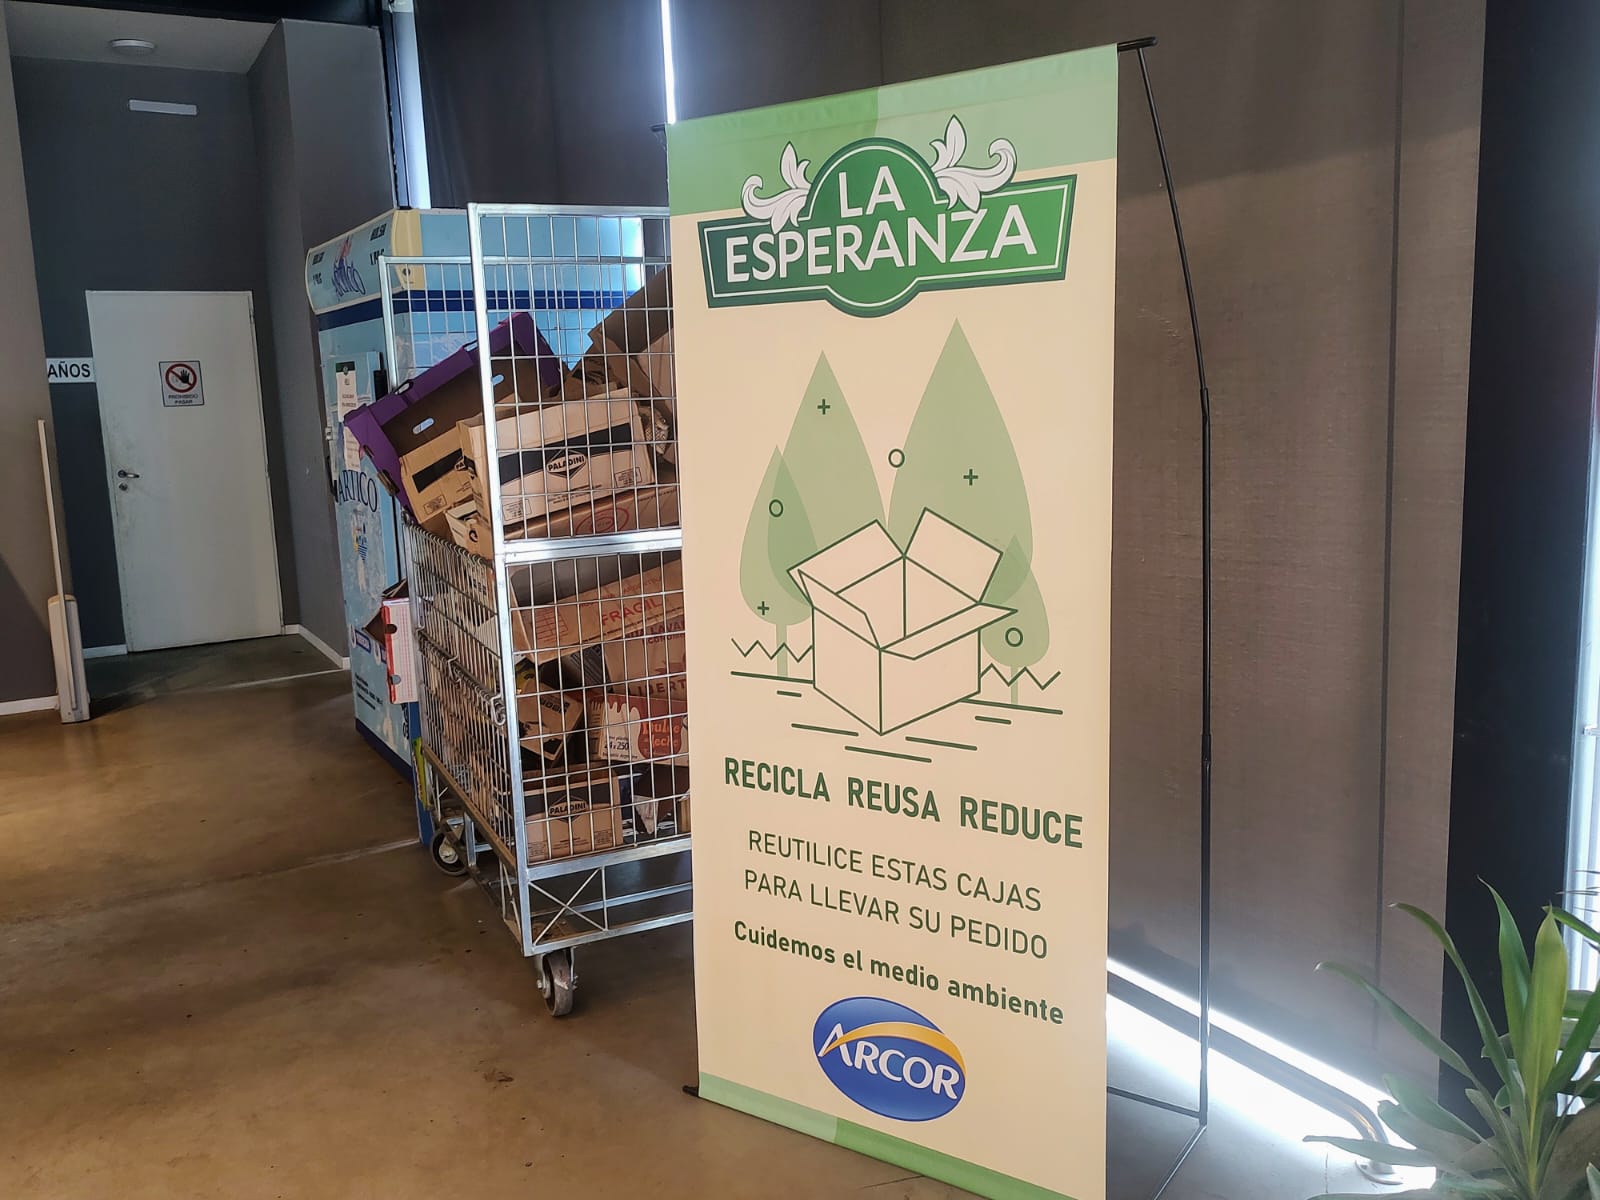 Supermercados “La Esperanza” ofrece bolsas reutilizables comprometido con el cuidado del ambiente 